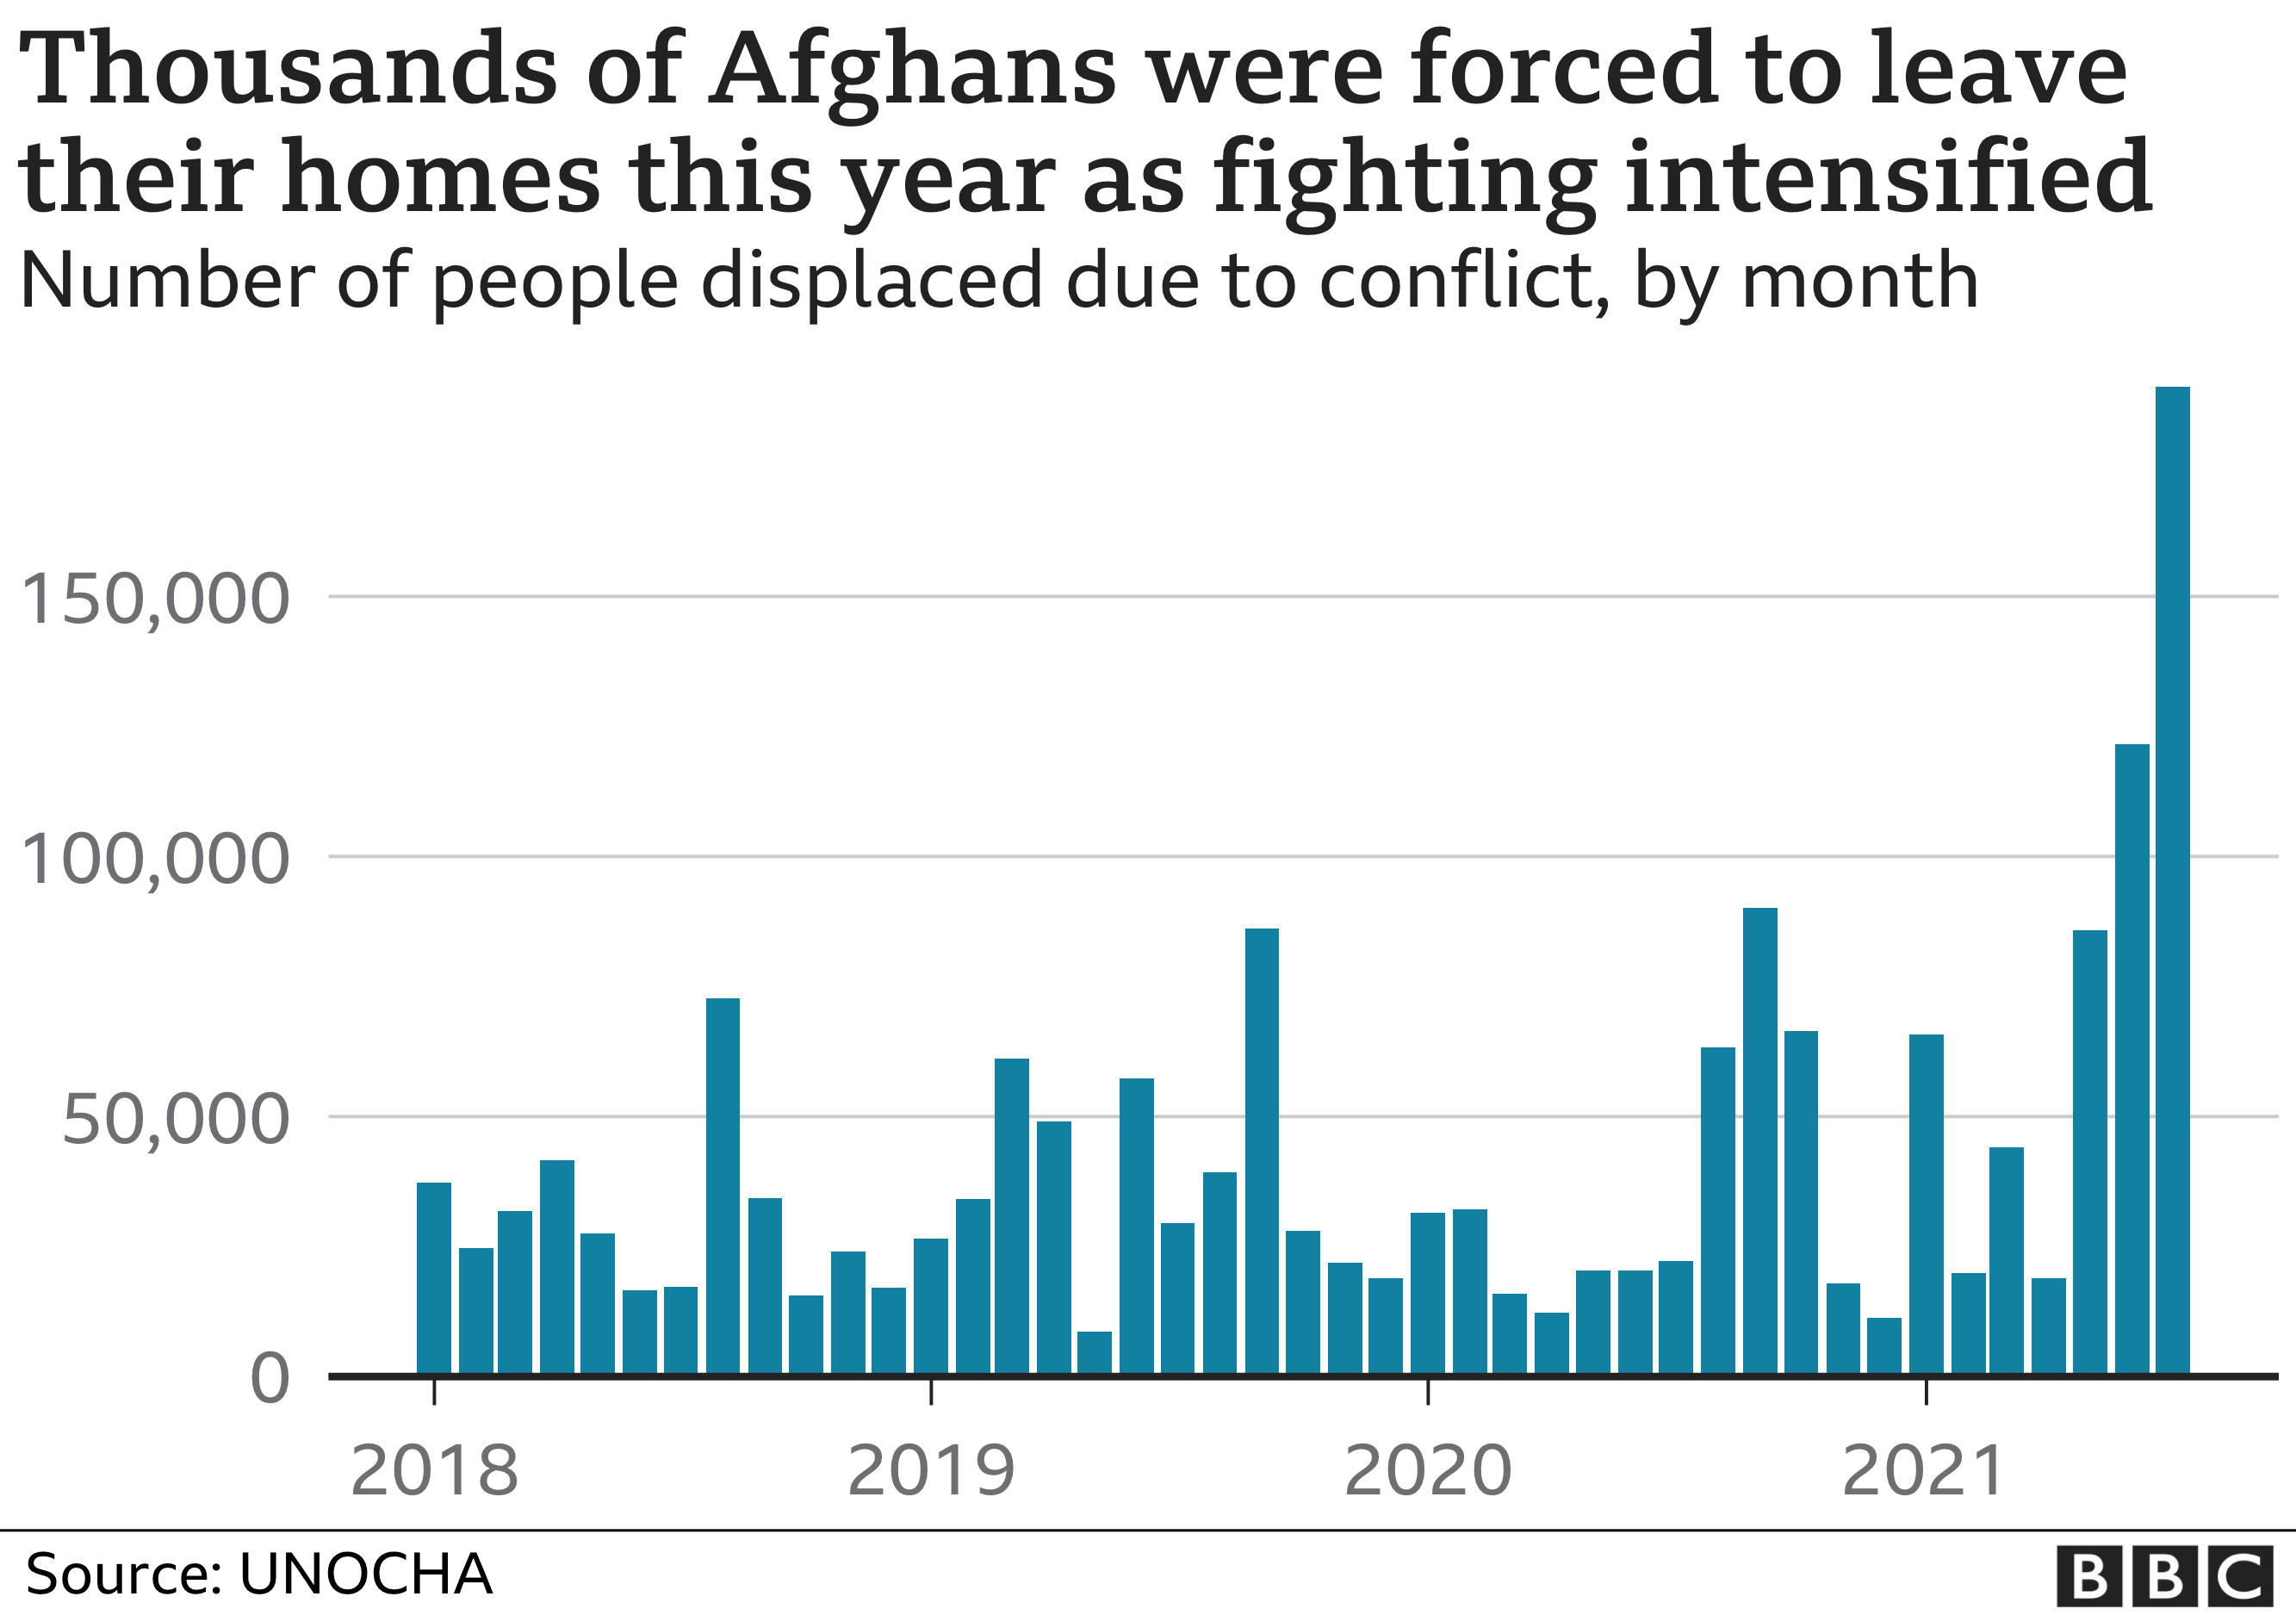 Bagan yang menunjukkan jumlah pengungsi internal Afghanistan karena konflik sejak 2018.